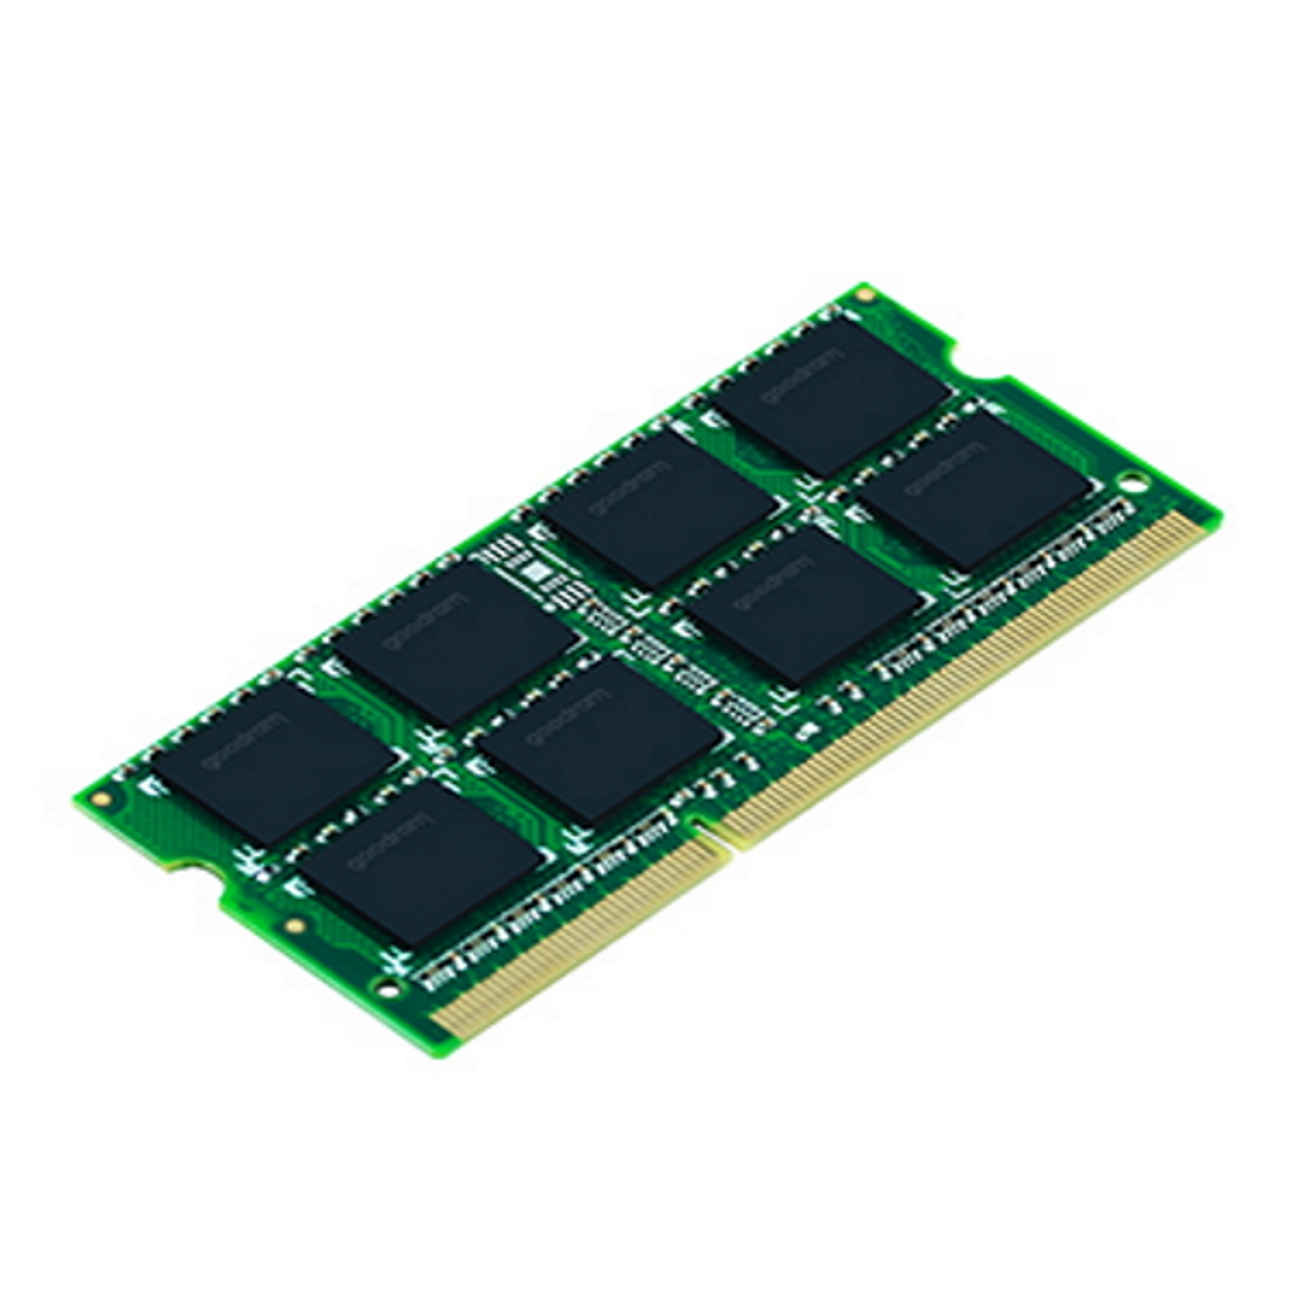 GB SR 4 GOODRAM Arbeitsspeicher SODIMM DDR3 4GB 1333MHz CL9